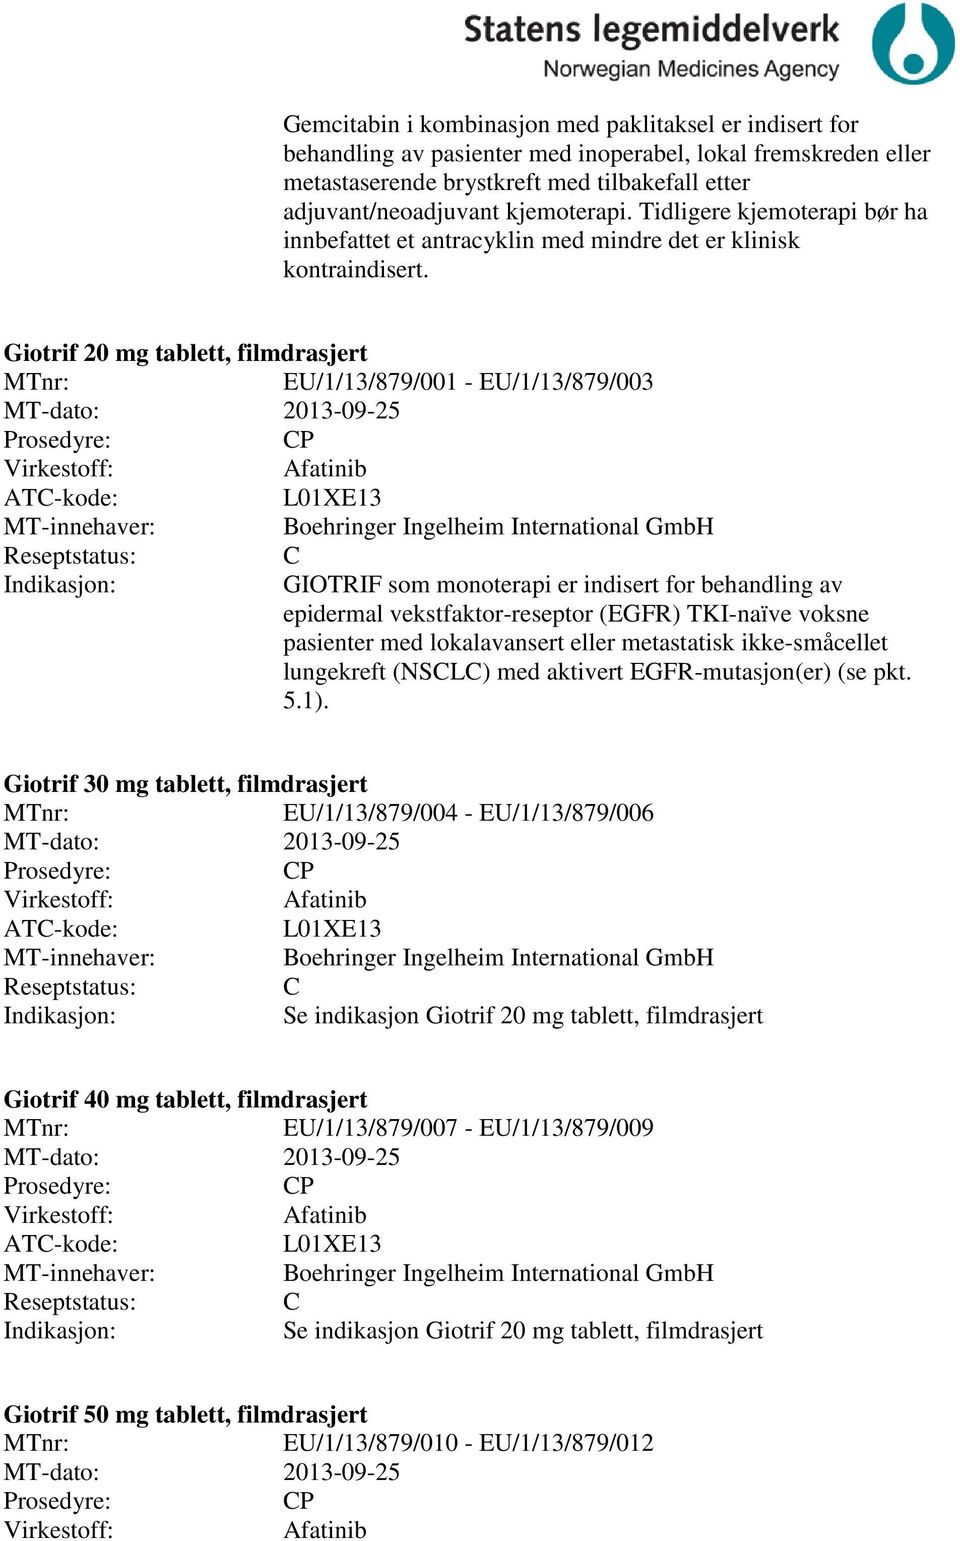 Giotrif 20 mg tablett, filmdrasjert /1/13/879/001 - /1/13/879/003 MT-dato: 2013-09-25 P Afatinib L01XE13 Boehringer Ingelheim International GmbH GIOTRIF som monoterapi er indisert for behandling av